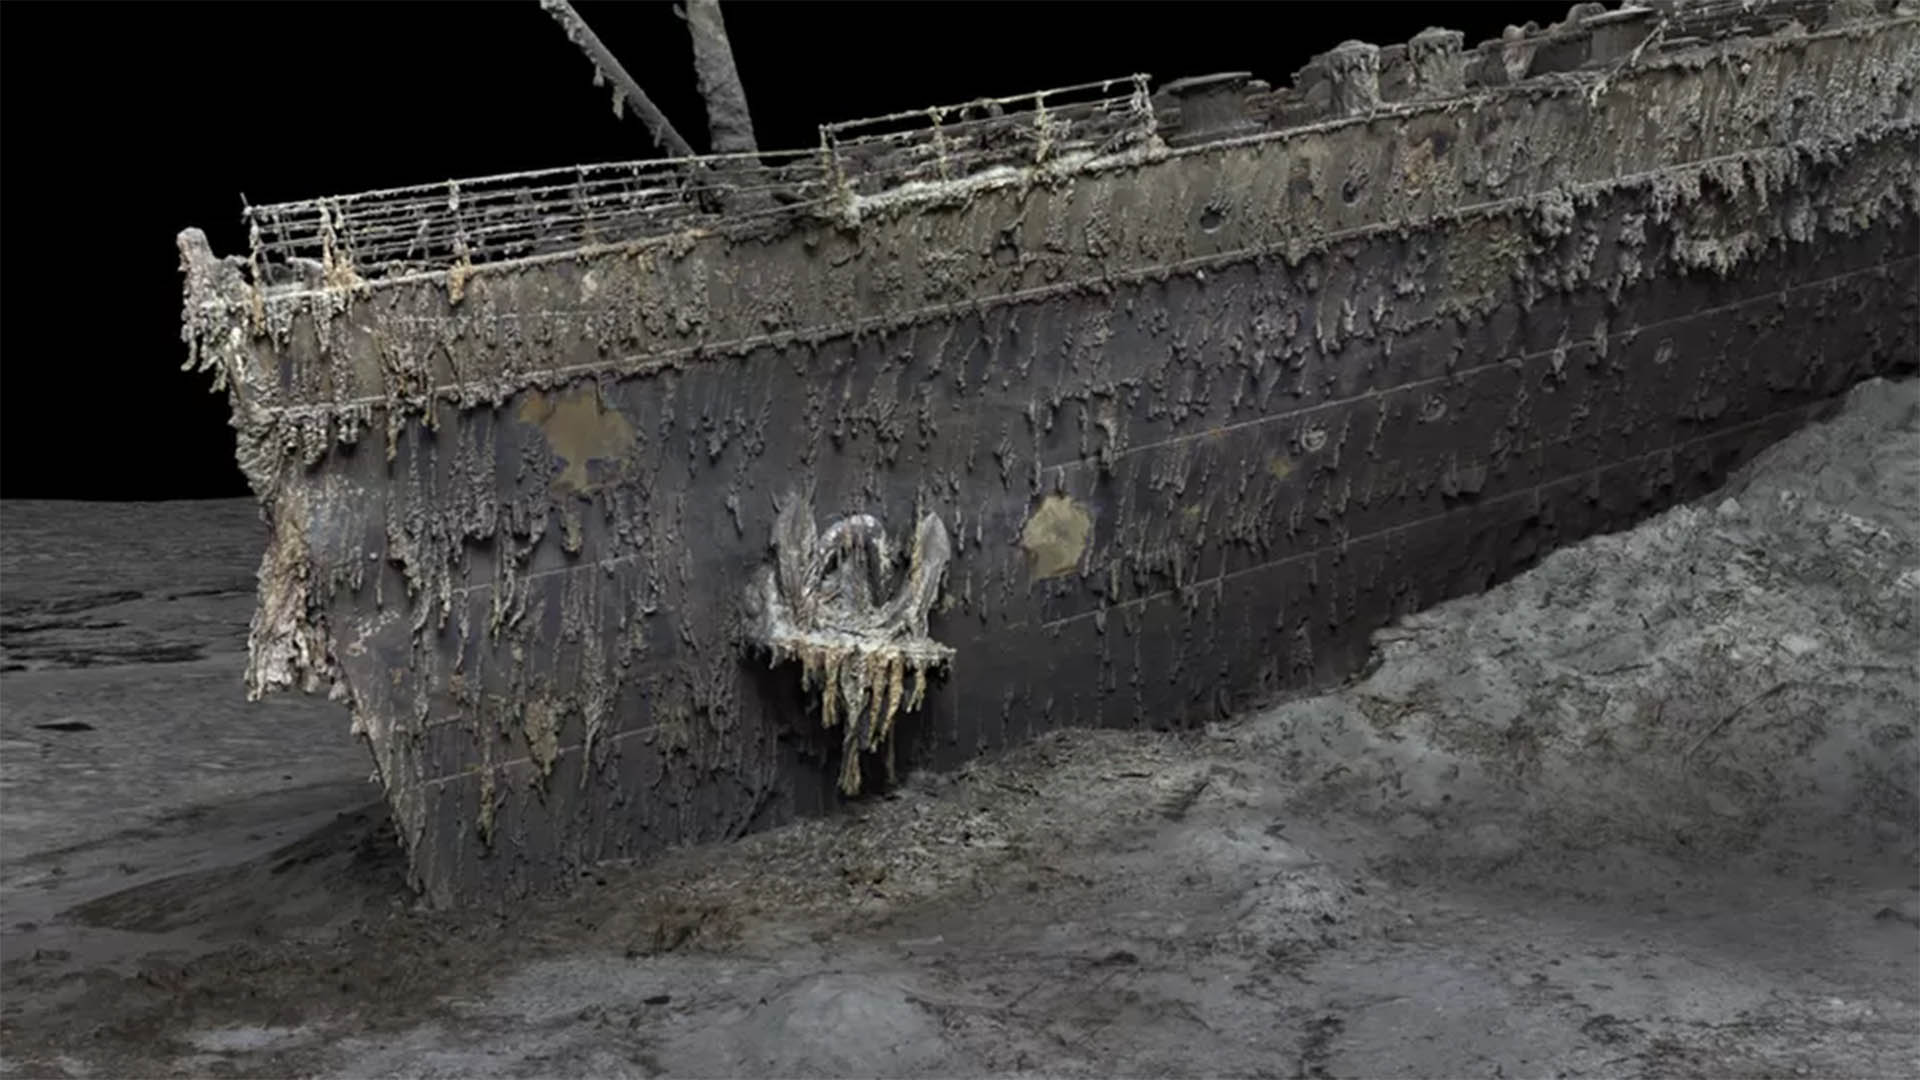 The Titanic's bow underwater 